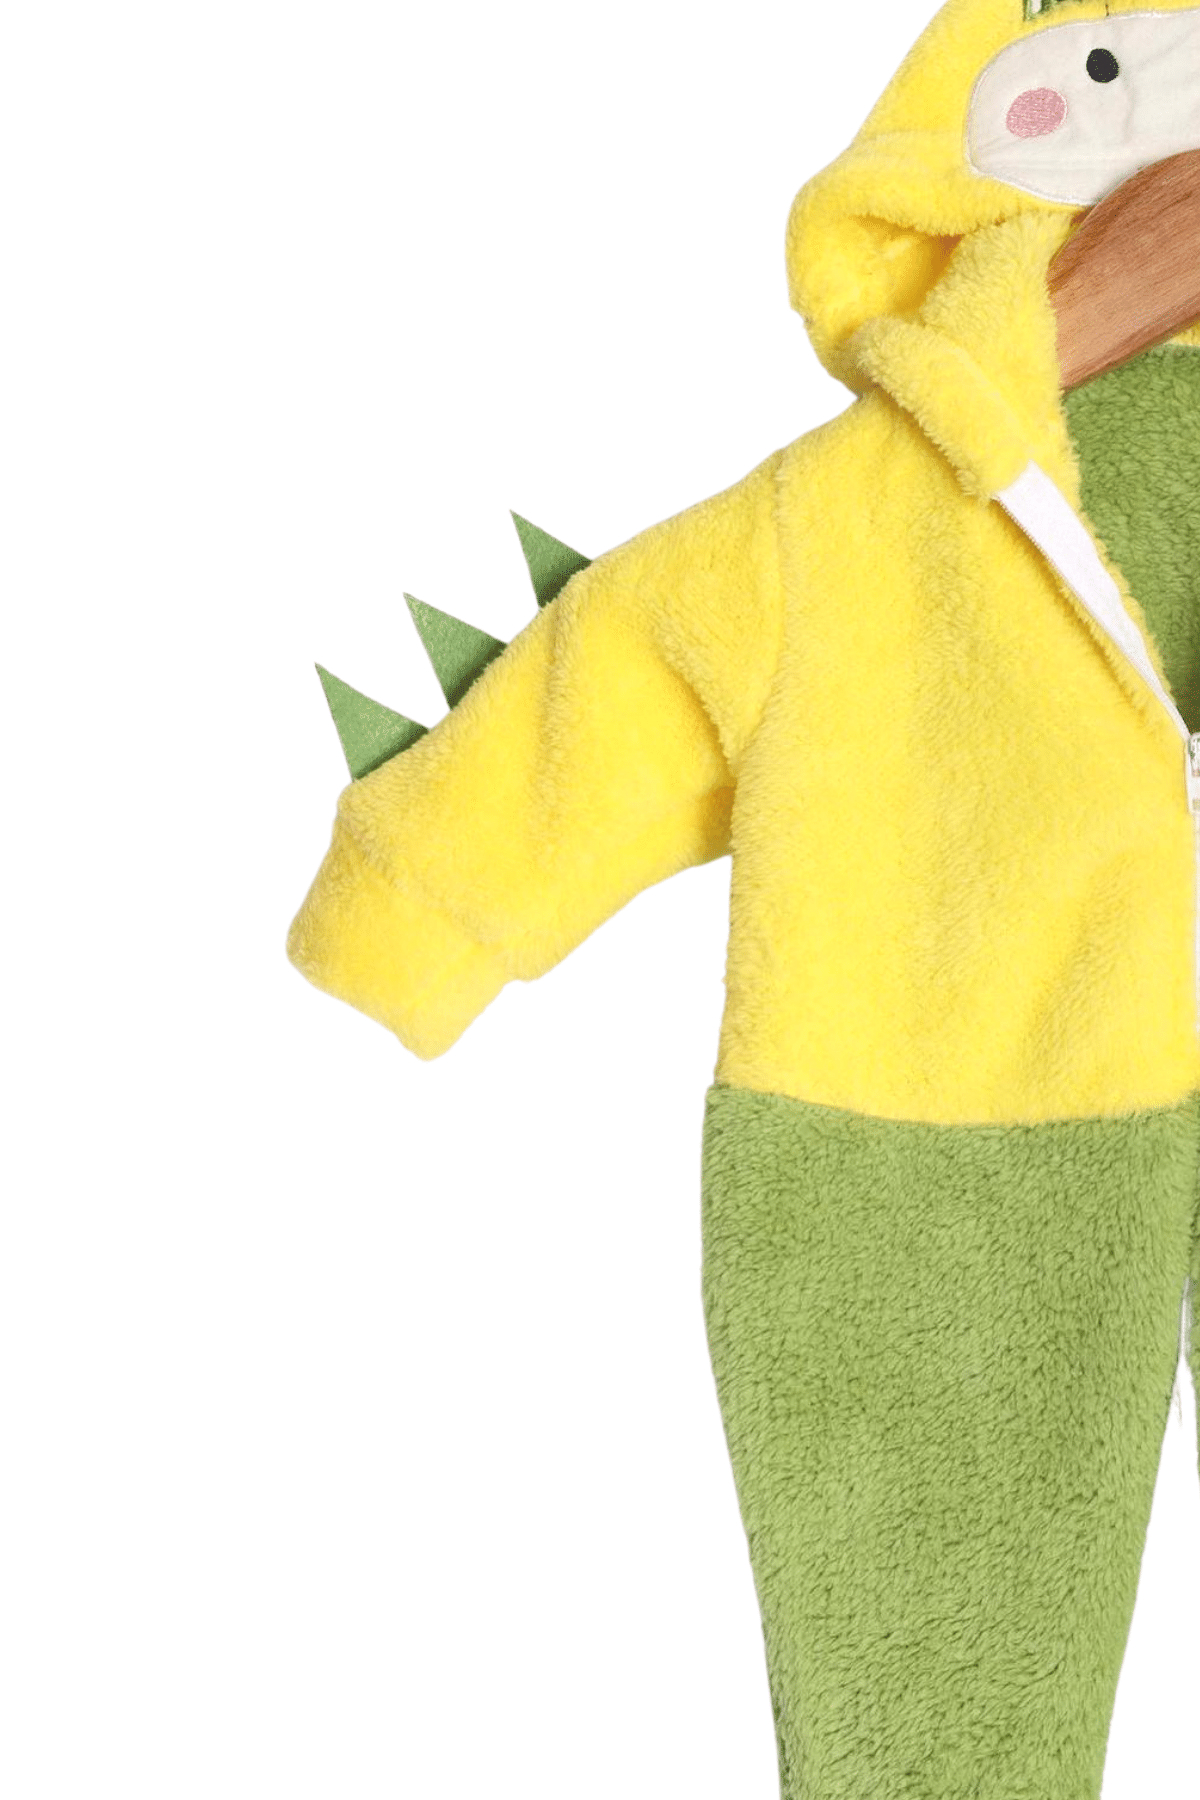 Arıbaby Dino Nakışlı Bebek Tulum Sarı-Yeşil